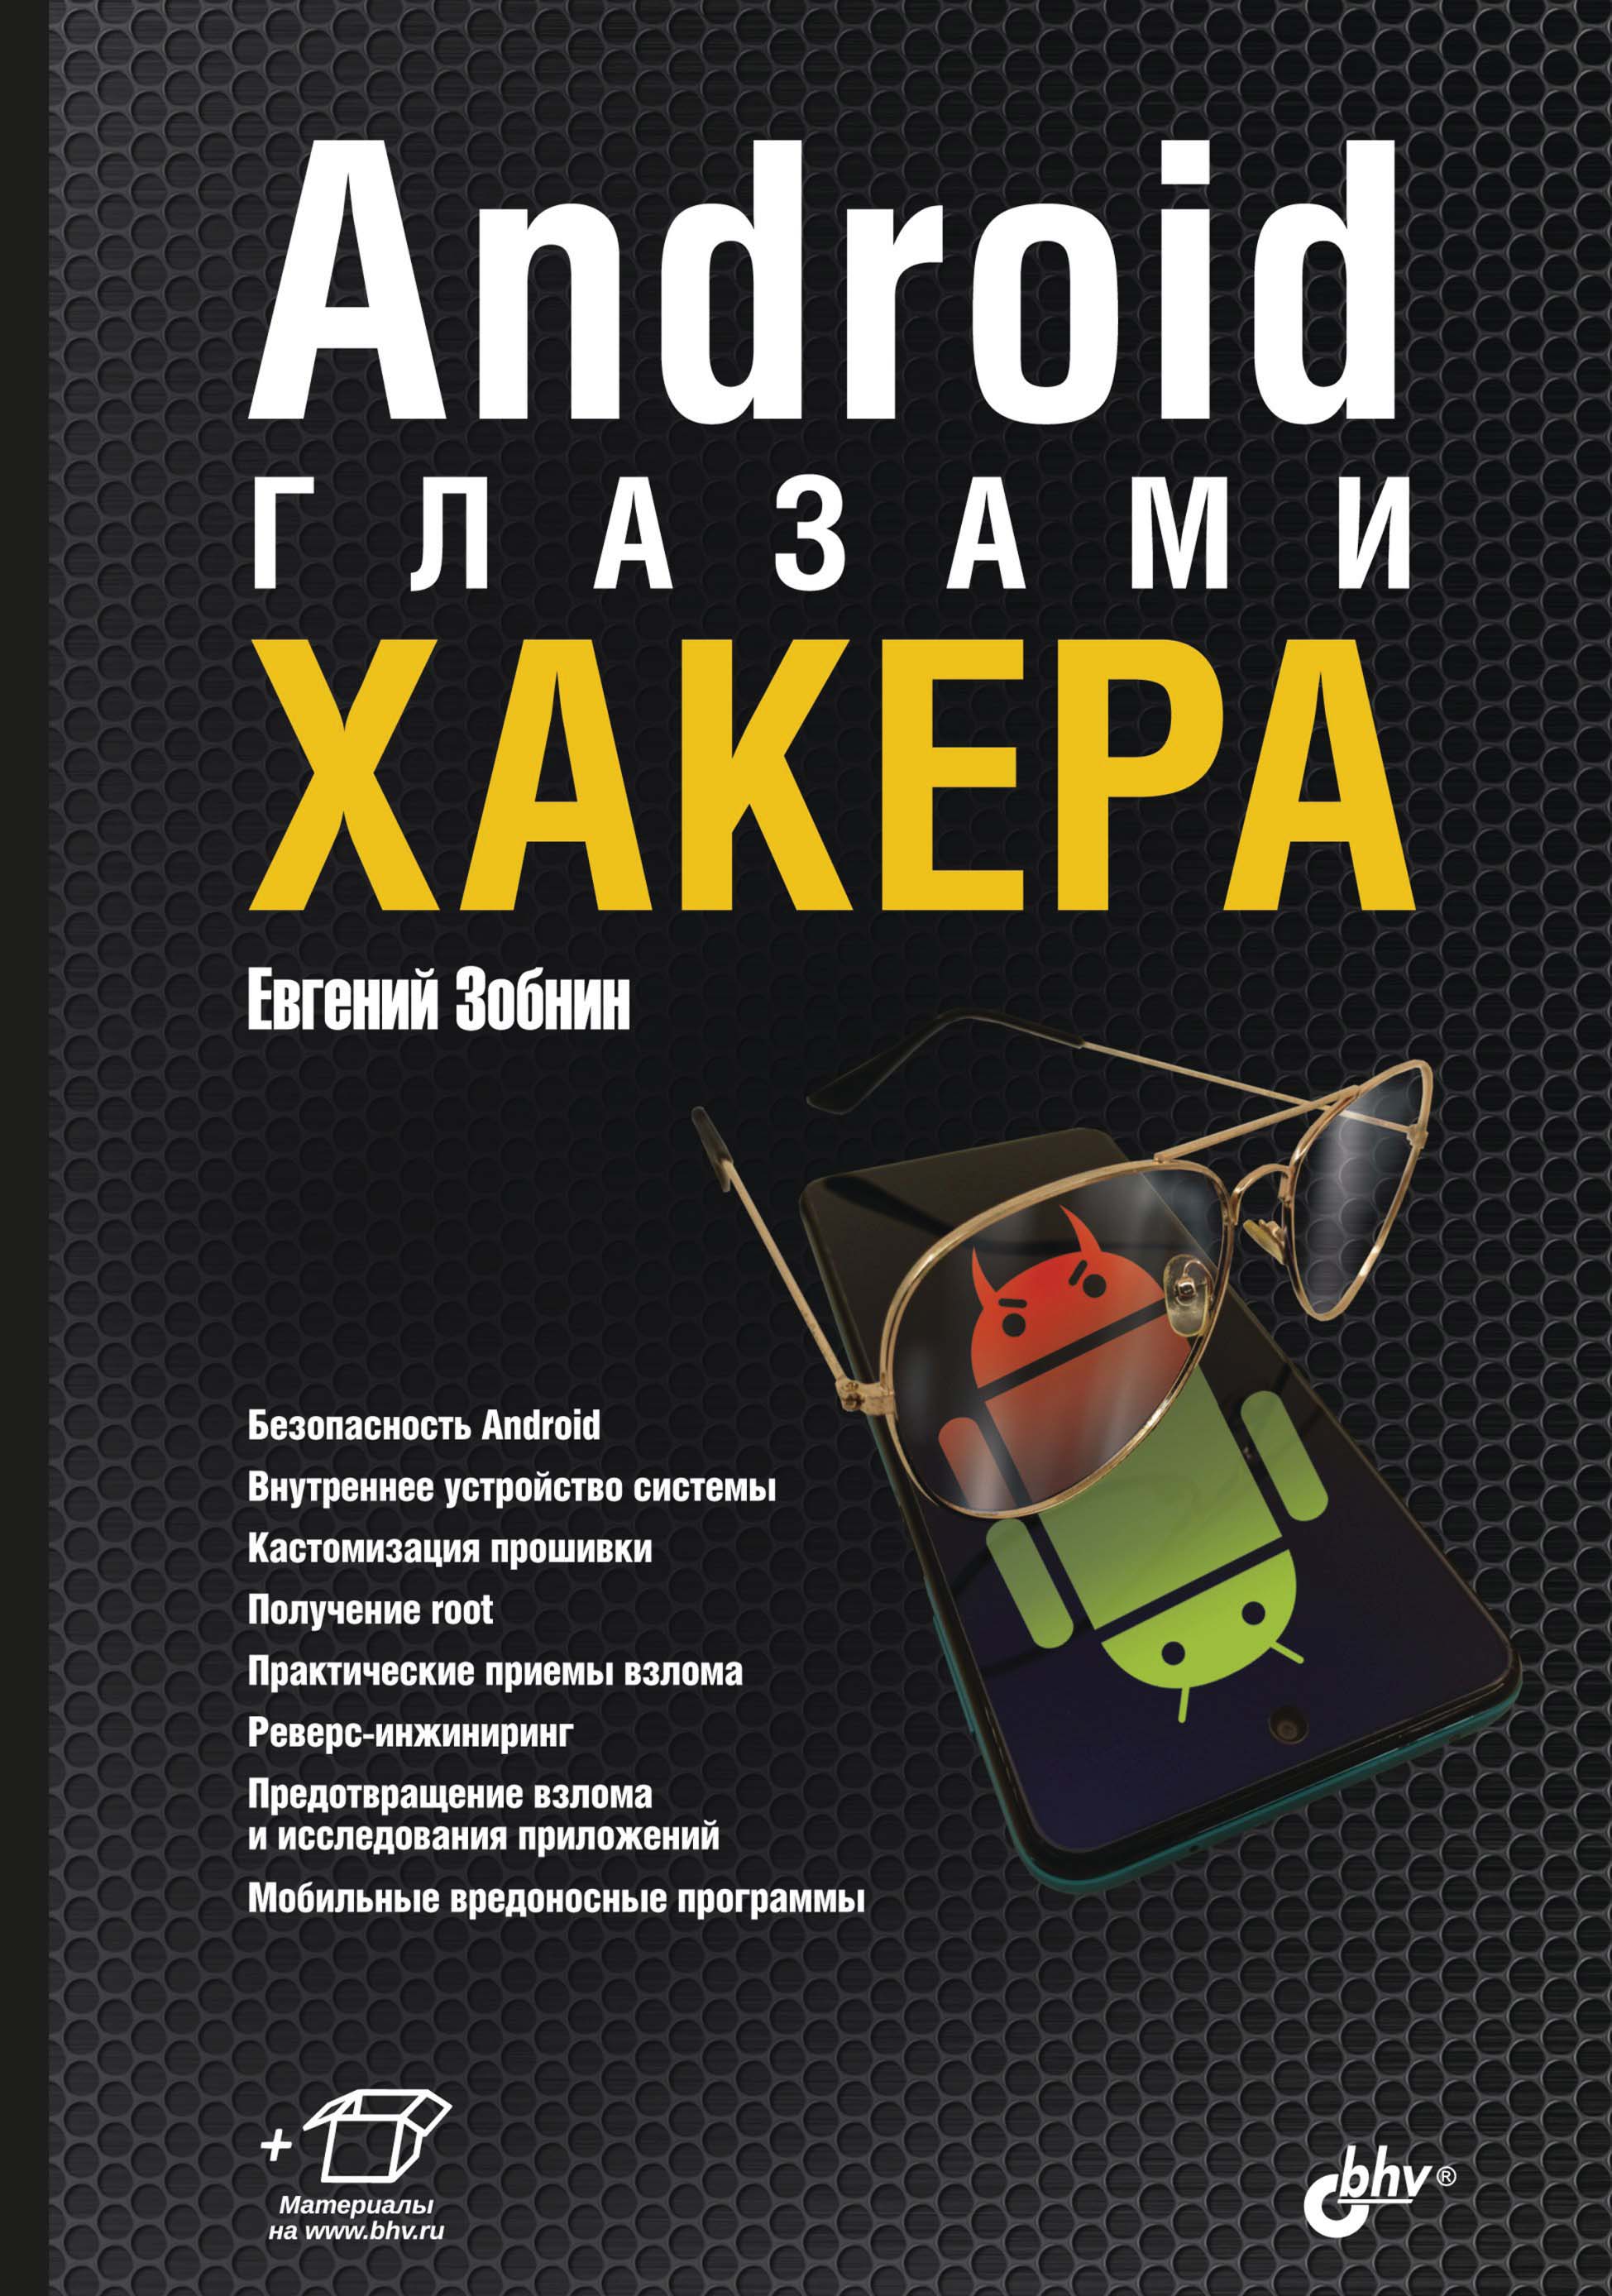 Книга Глазами хакера Android глазами хакера созданная Евгений Зобнин может относится к жанру информационная безопасность, ОС и сети. Стоимость электронной книги Android глазами хакера с идентификатором 67726706 составляет 320.00 руб.